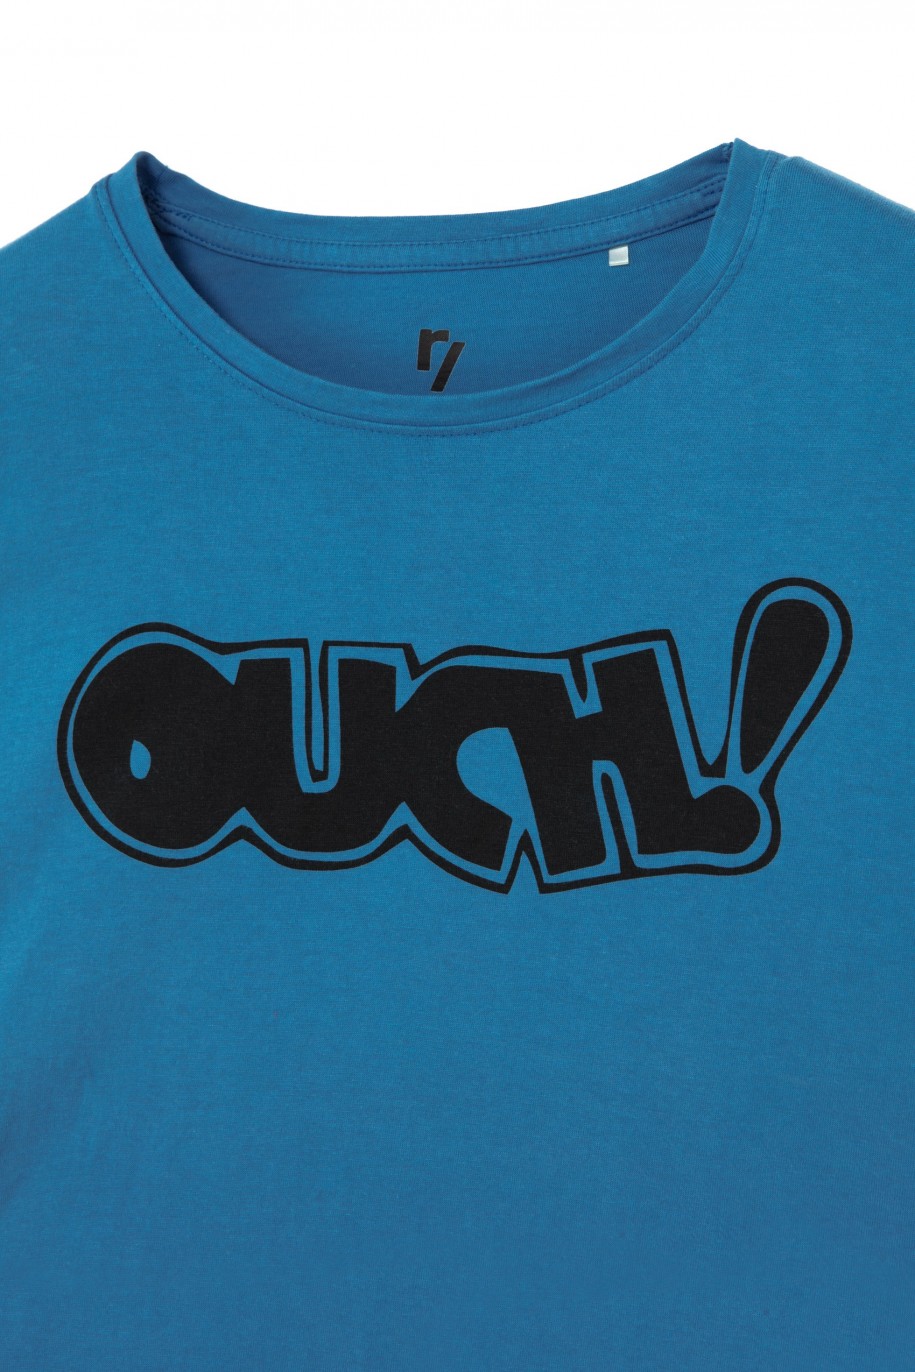 Niebieski t-shirt dla dziewczyny OUCH! - 31376